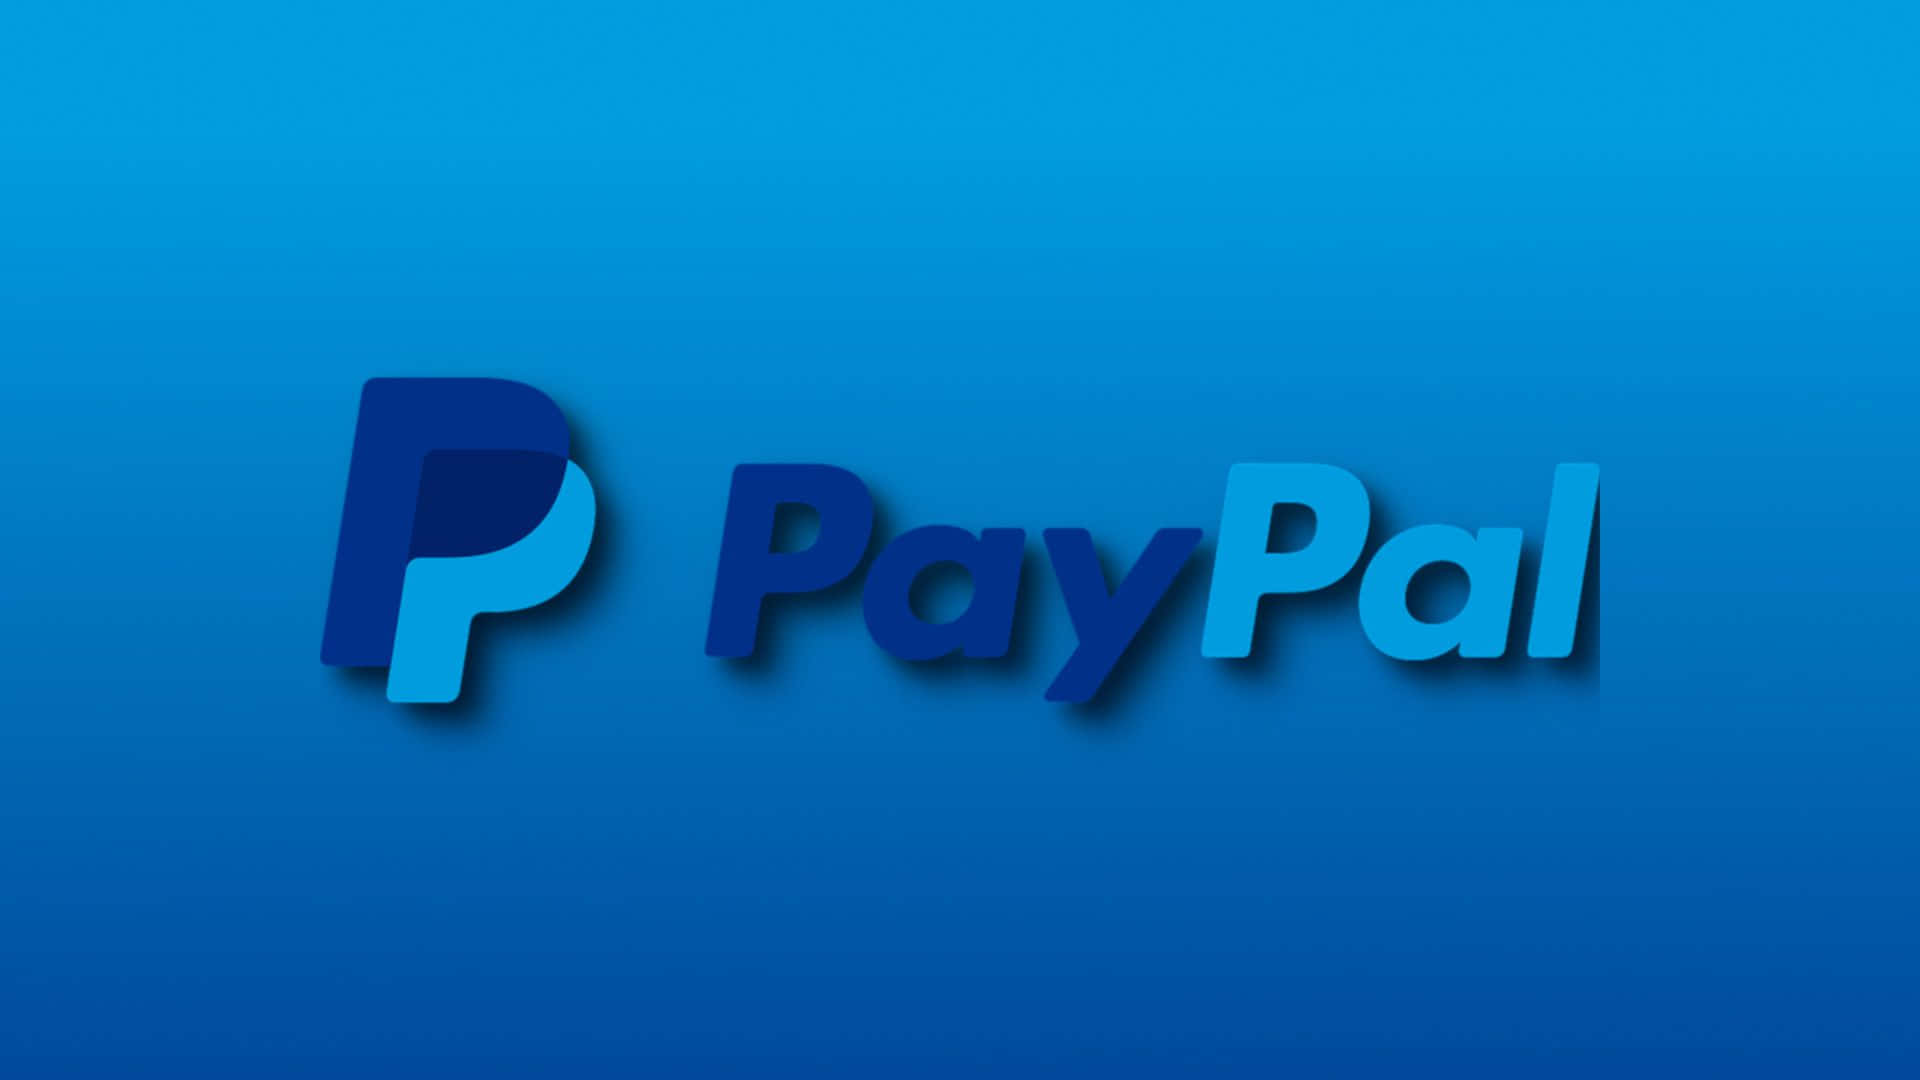 Paypalgibt Ihnen Die Kontrolle Und Zugänglichkeit Zu Ihrem Geld